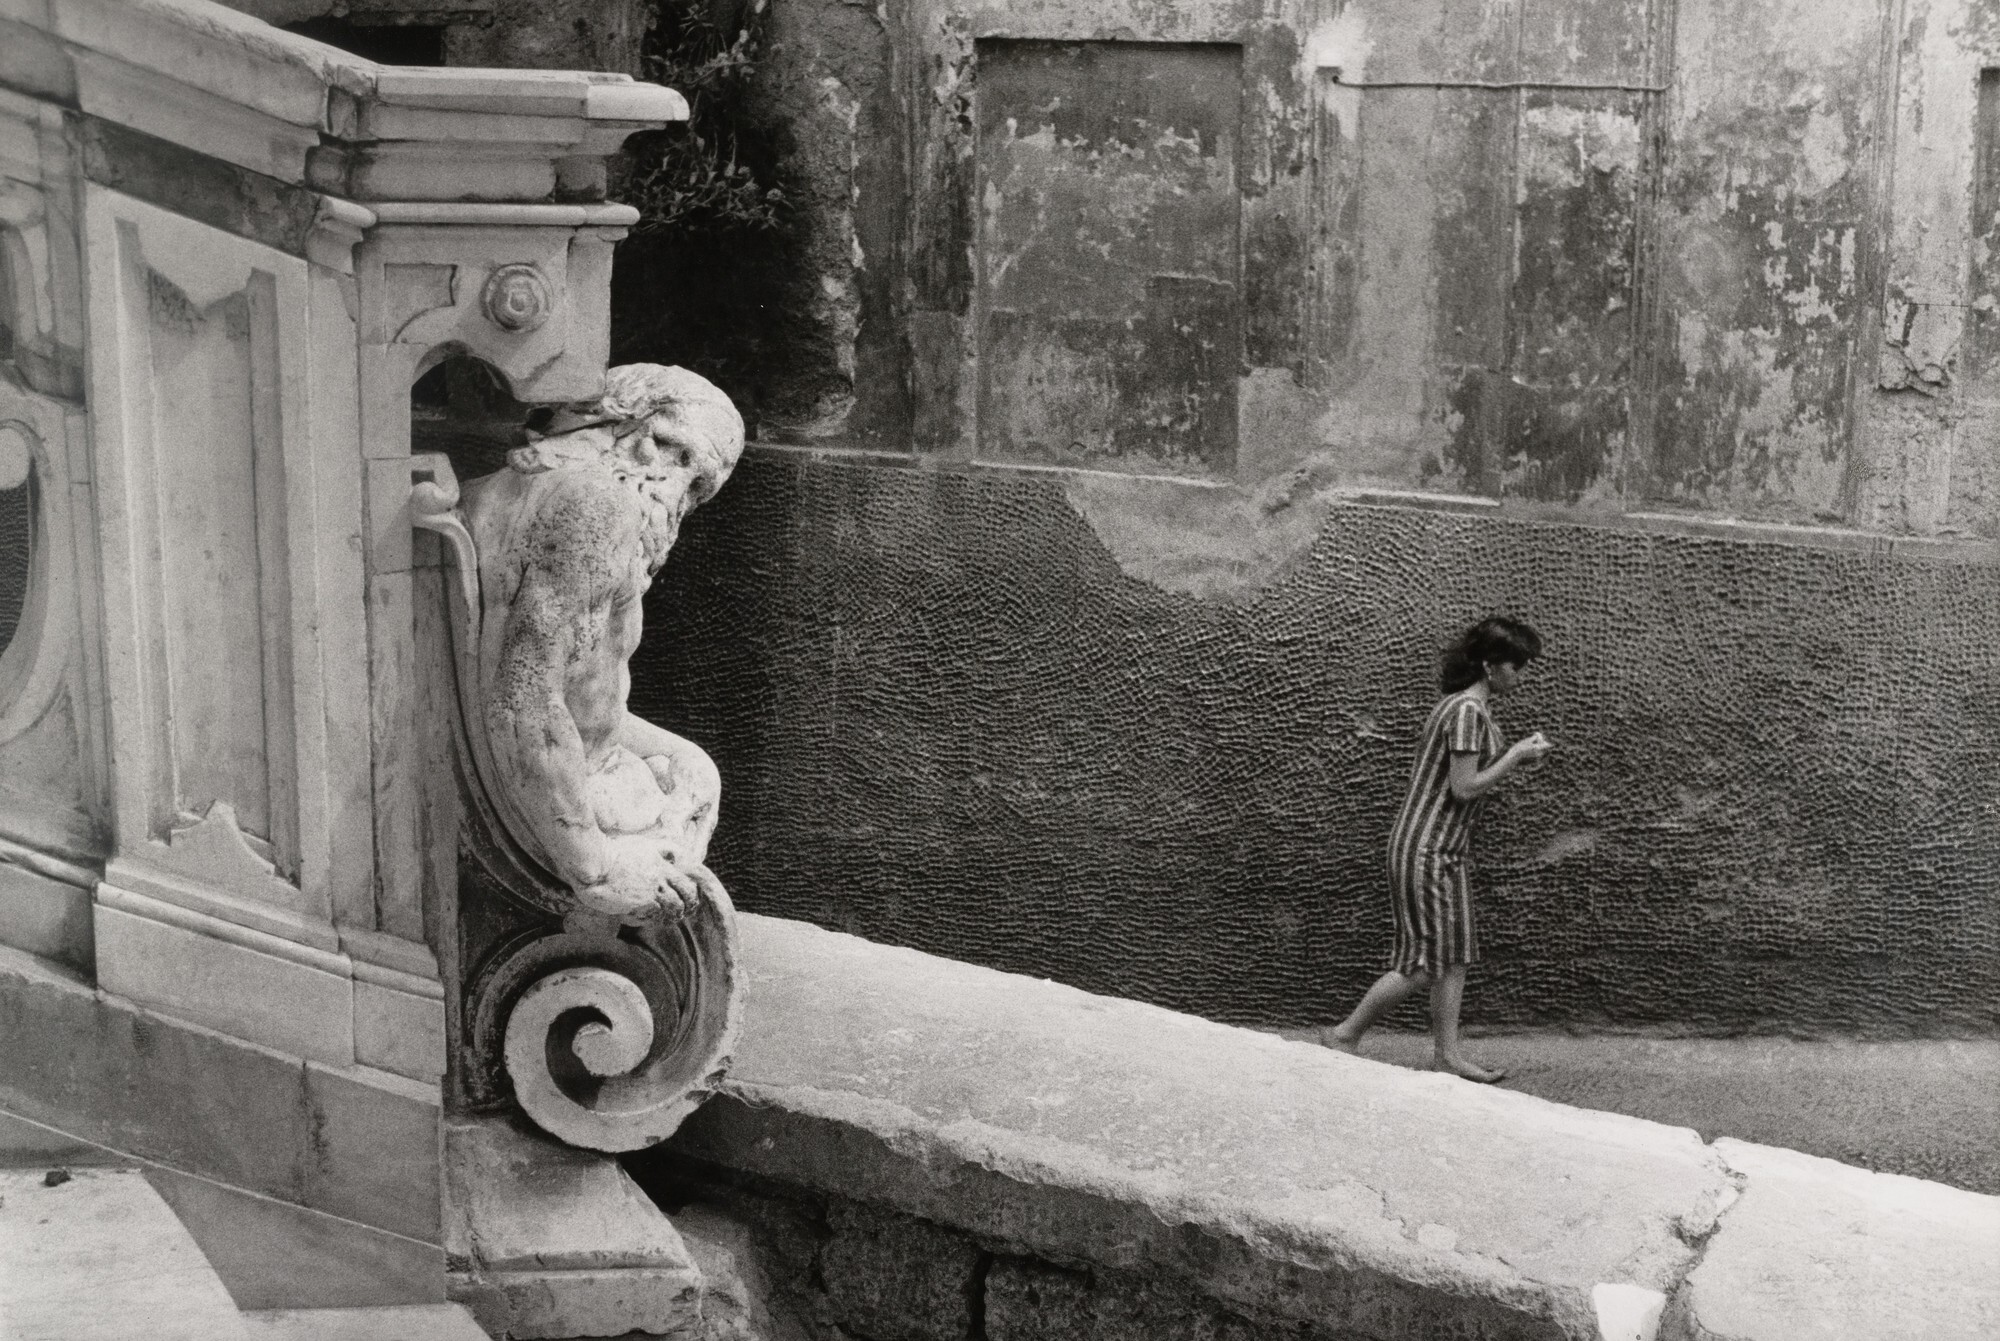 Неаполь, Италия, 1960. Фотограф Анри Картье-Брессон 1